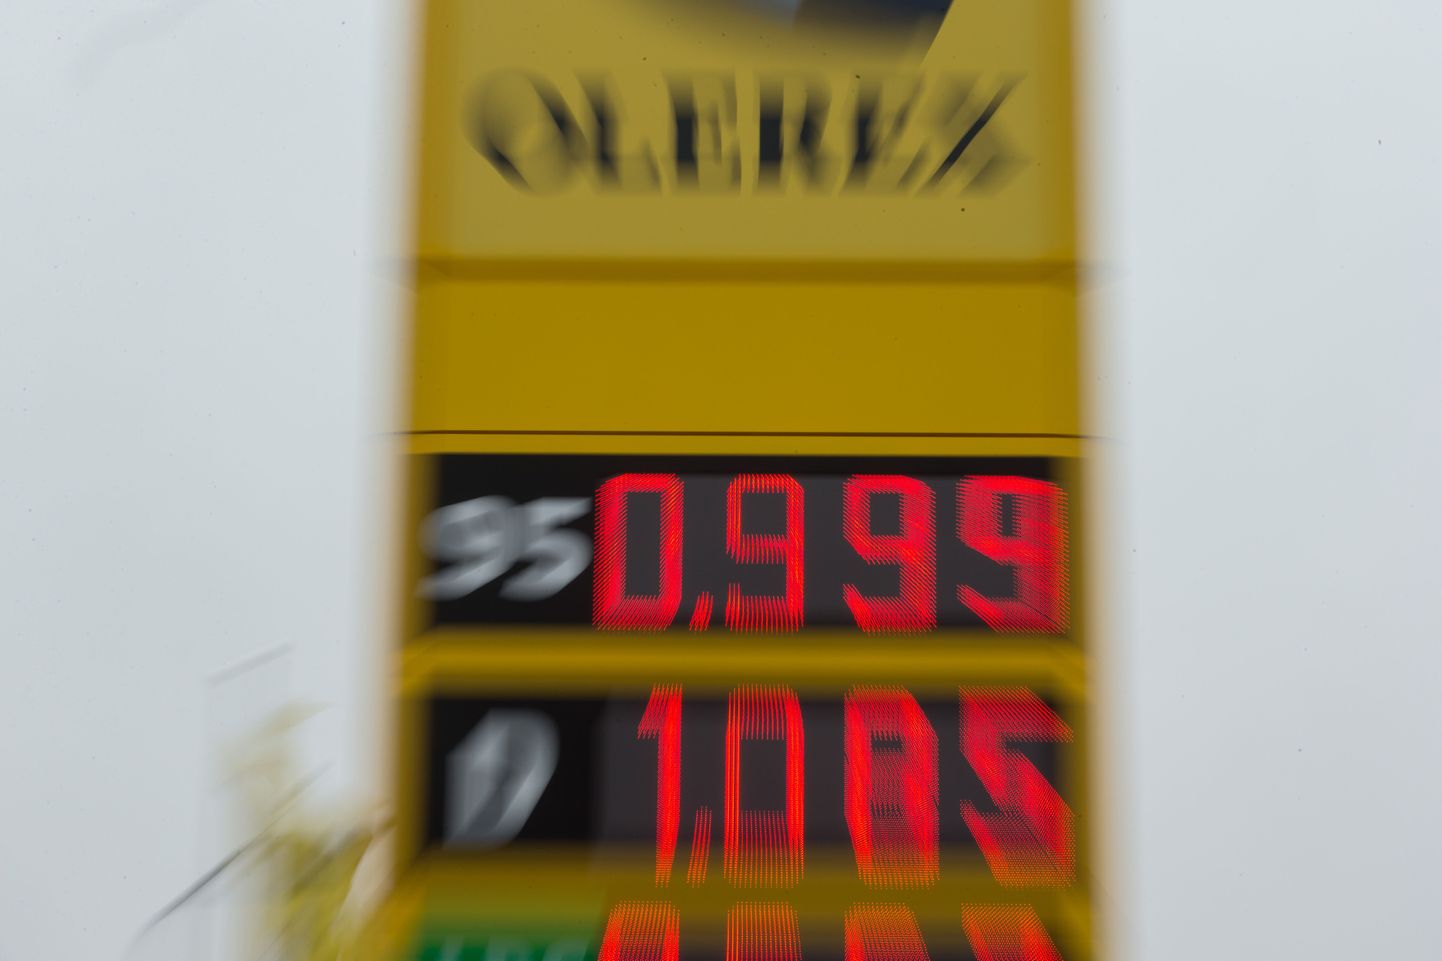 Õismäe Olerexis on kütuse hind 0,999 eurot. Tanklas järjekorda ei olnud.